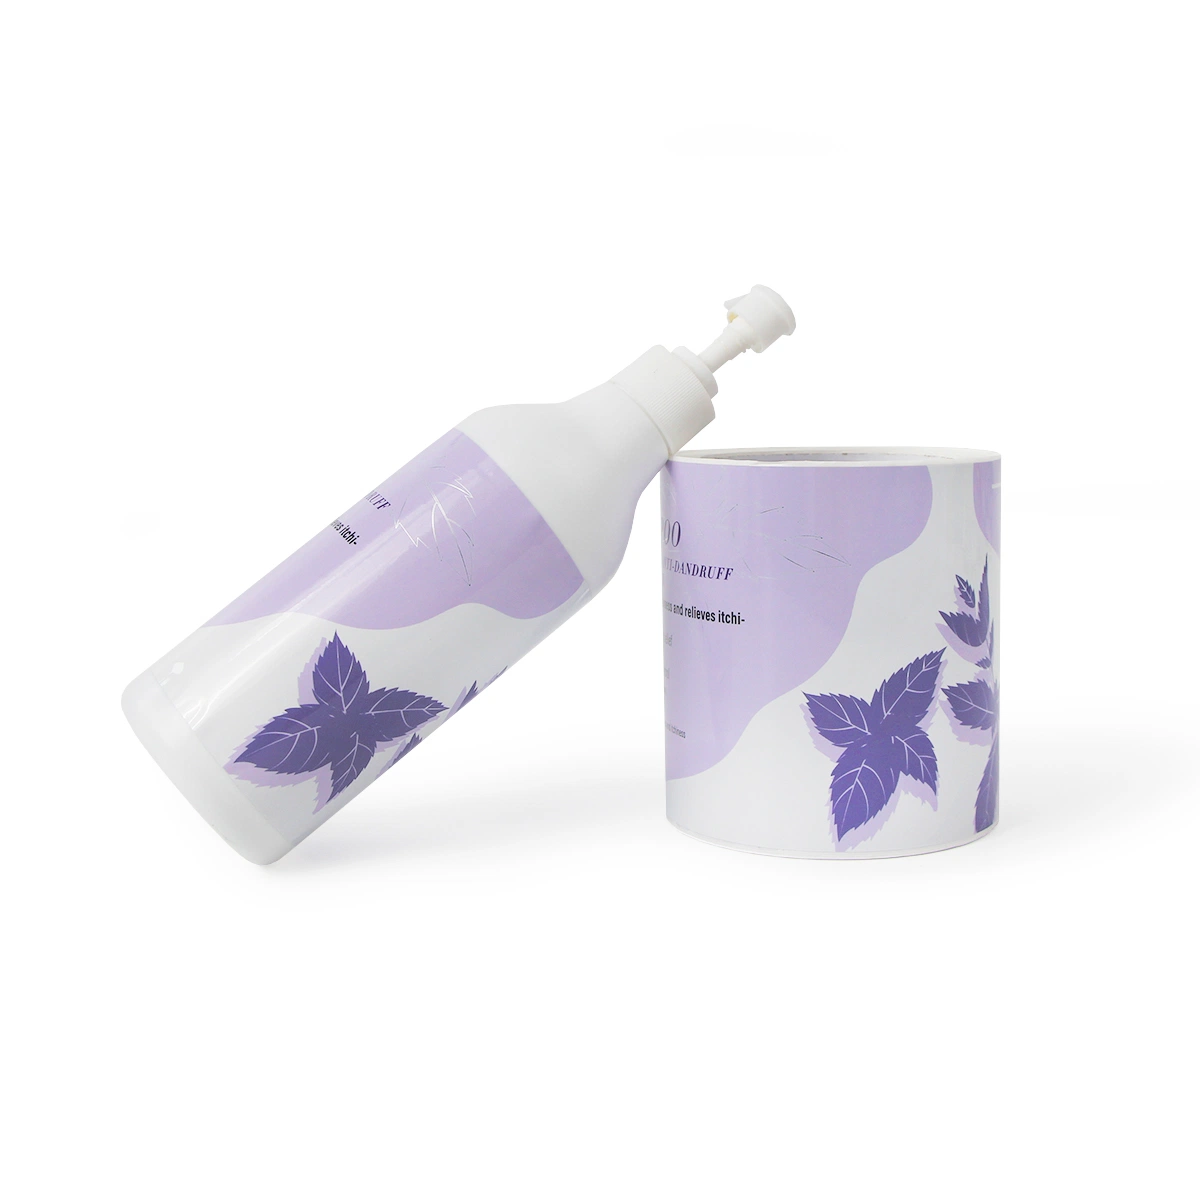 Agua a prueba de agua gel de ducha cosmético Shampoo botella de plástico Laminating Vinyl Etiquetas adhesivas para envases Etiquetas adhesivas impresión